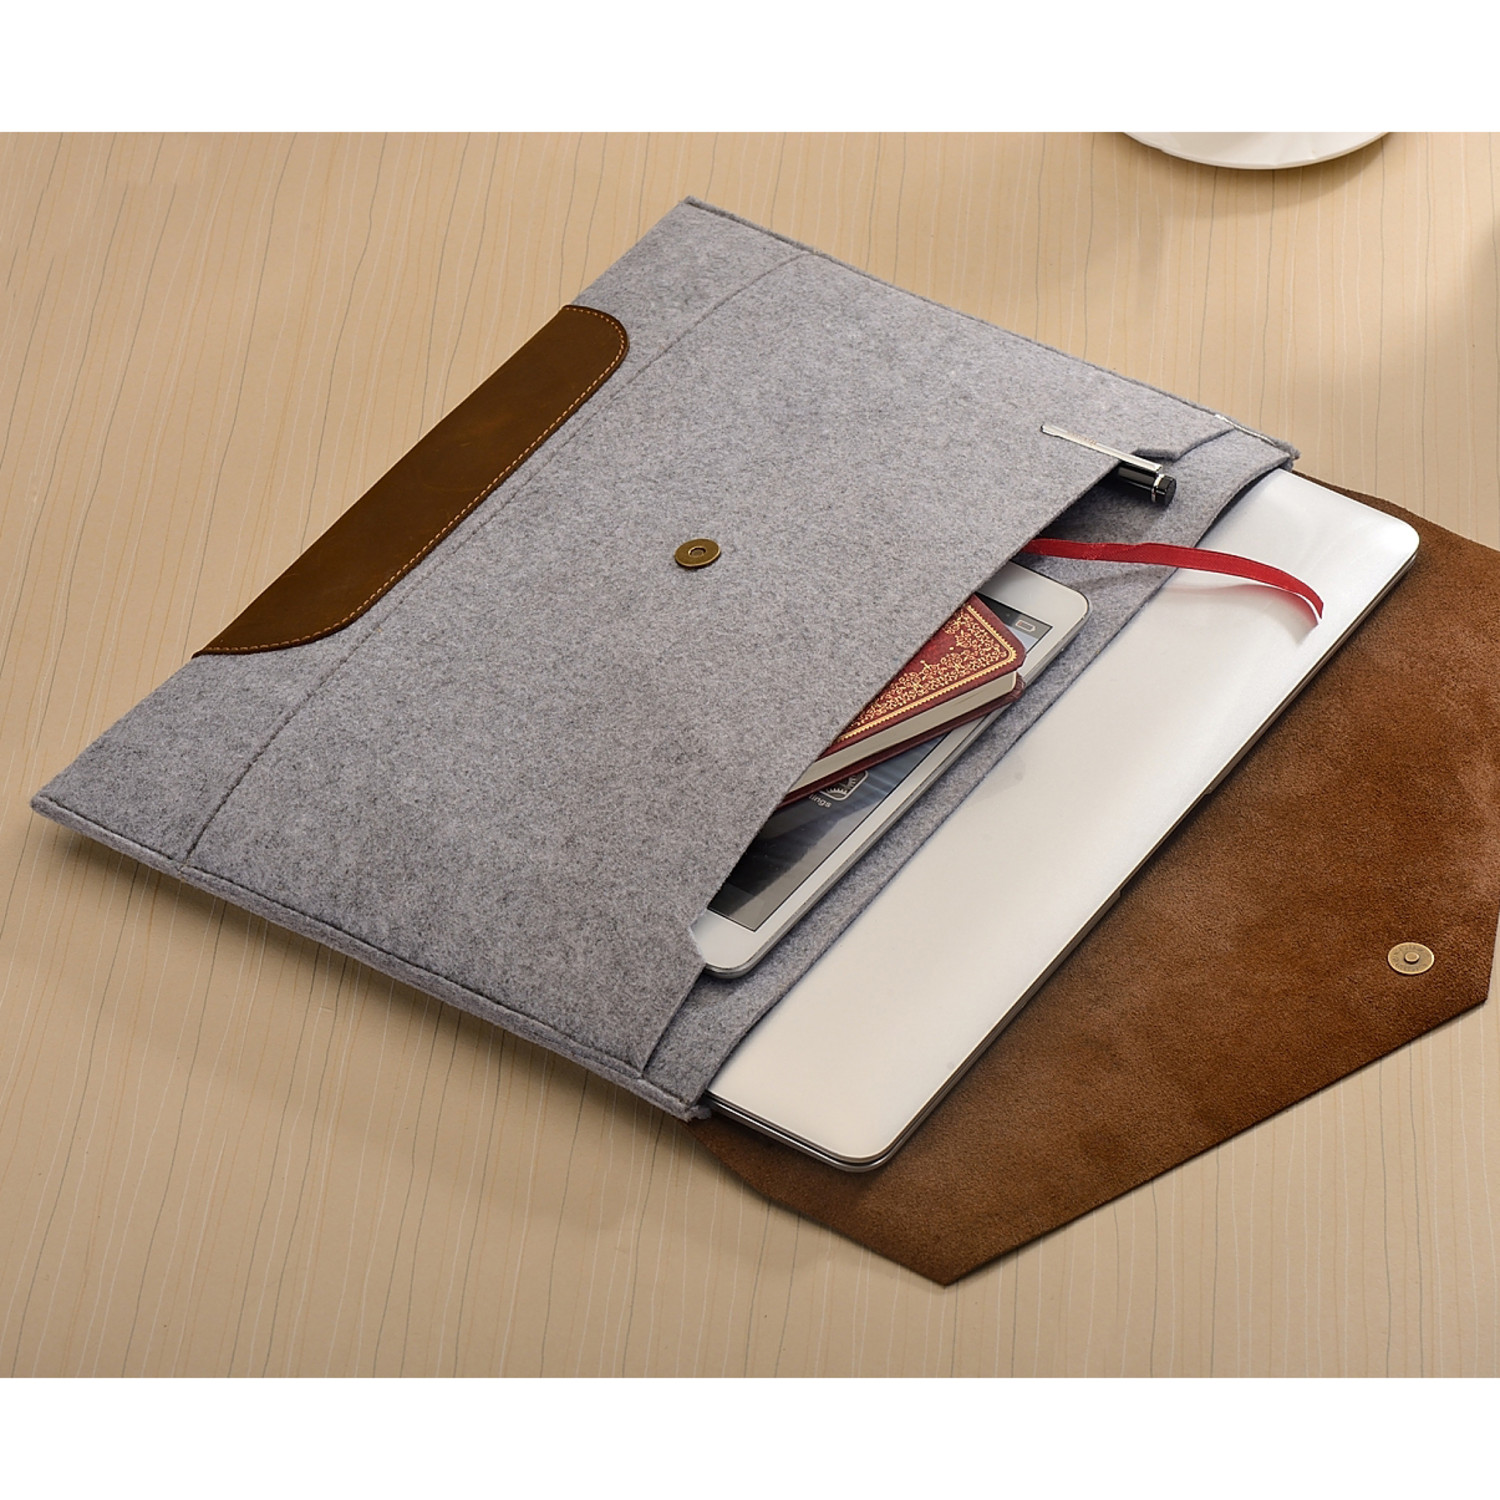 Envelope MacBook Sleeve